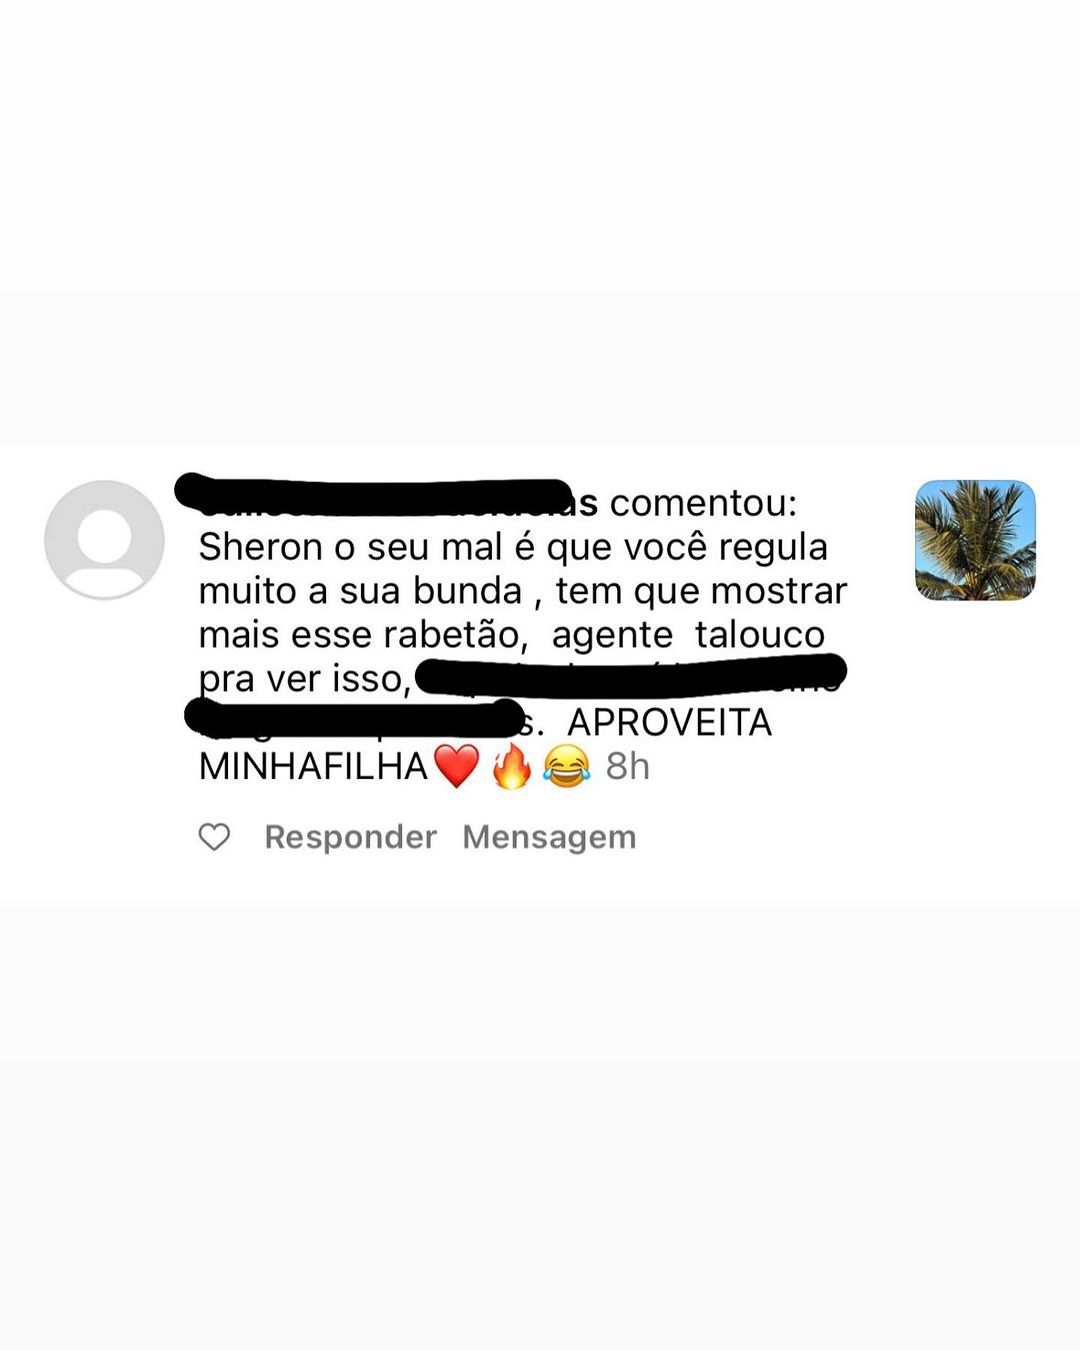 Sheron Menezes atendeu pedido ousado de fã no Instagram - Foto: Rerpodução/ Instagram@sheronmenezes